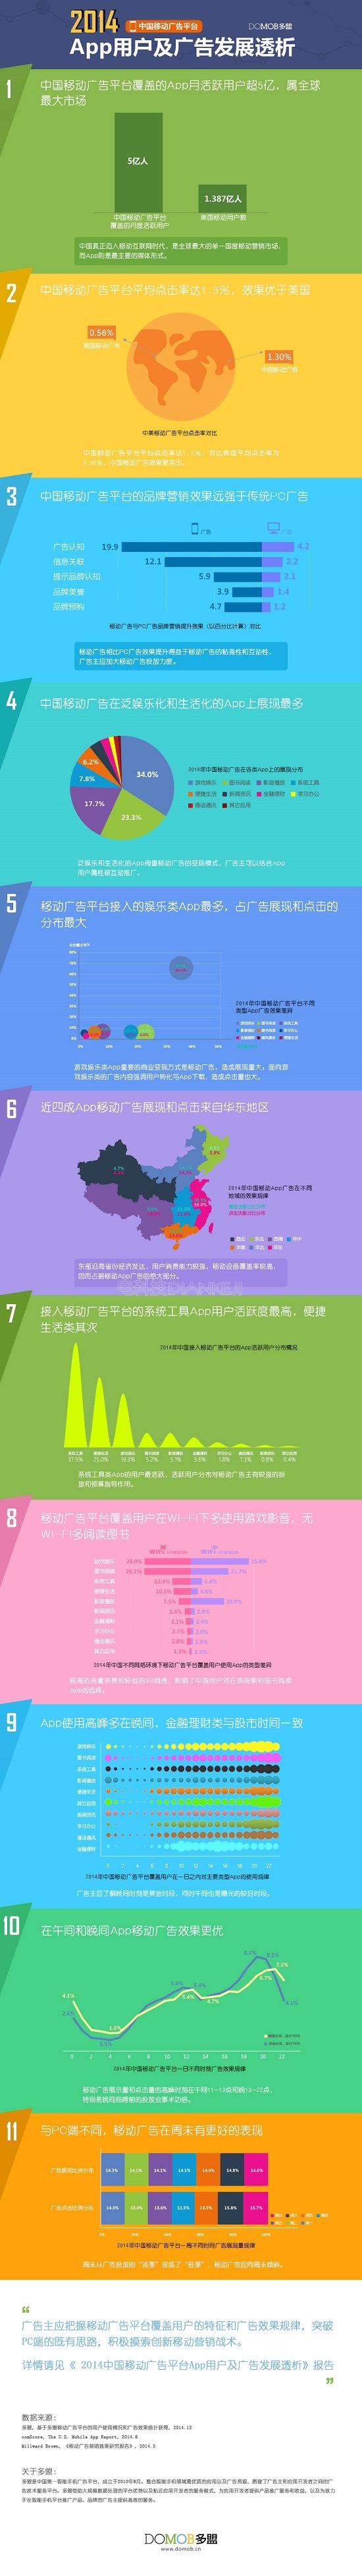 多盟数据:2014中国移动广告平台App用户及广告发展透析